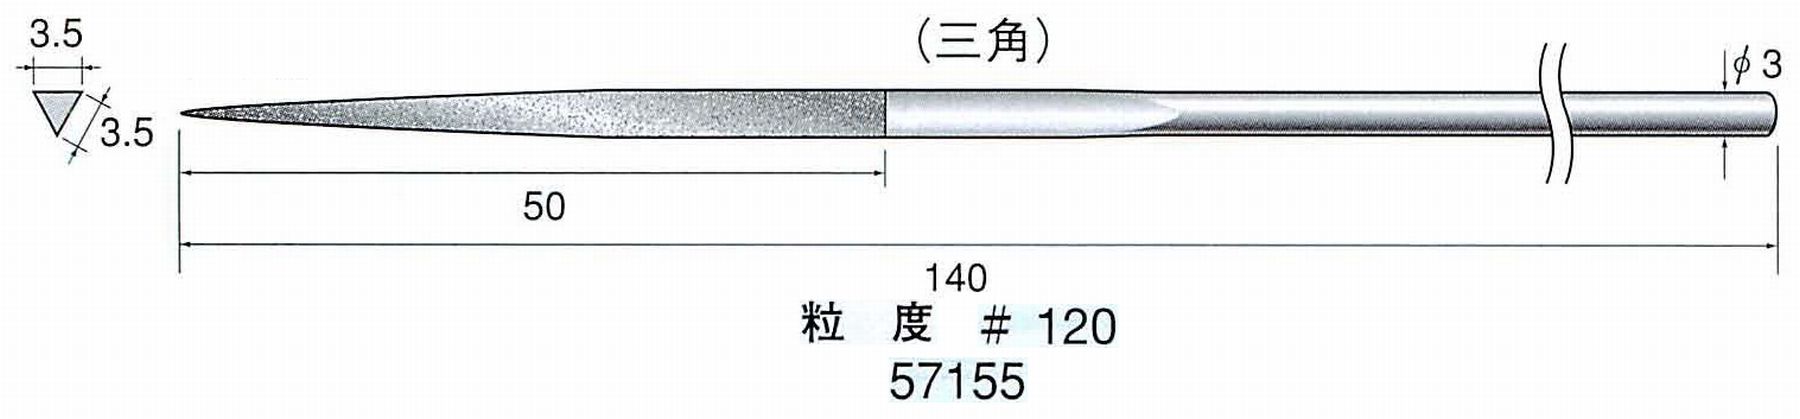 ナカニシ/NAKANISHI ダイヤモンドヤスリ 三角 軸径(シャンク)φ3.0mm 57155